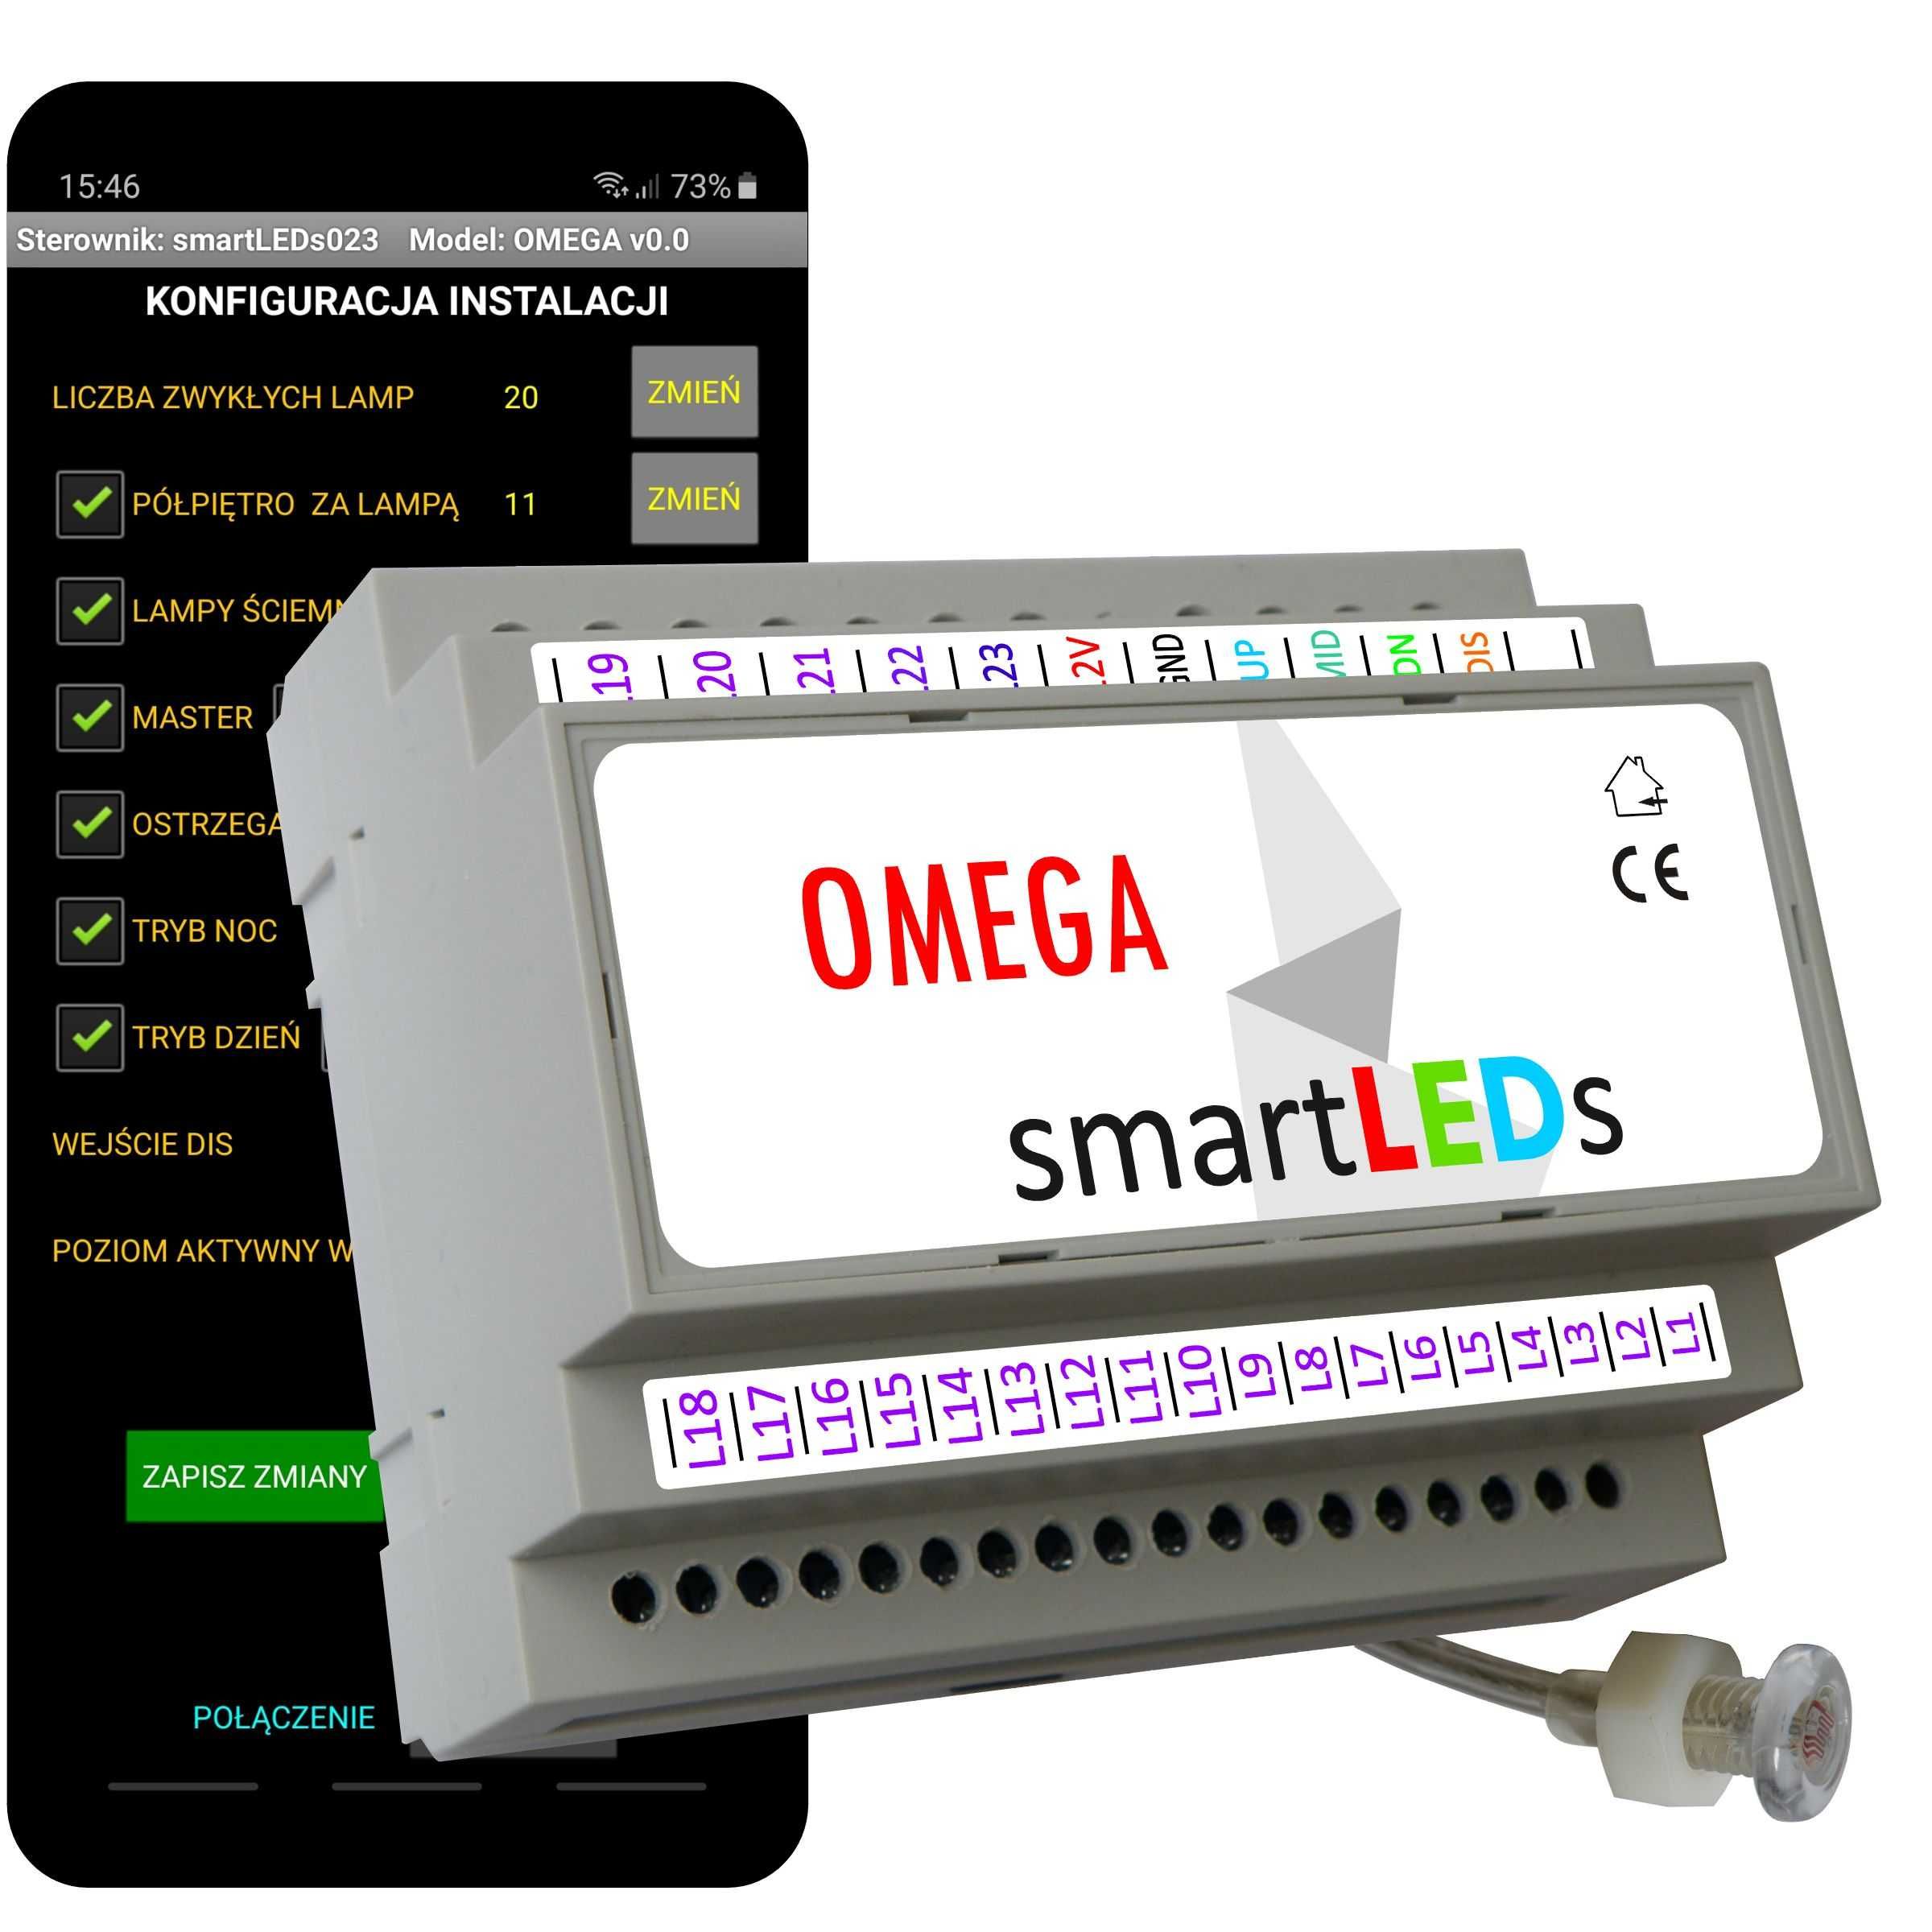 OMEGA - Inteligentny sterownik schodowy LED z aplikacją na smartfon